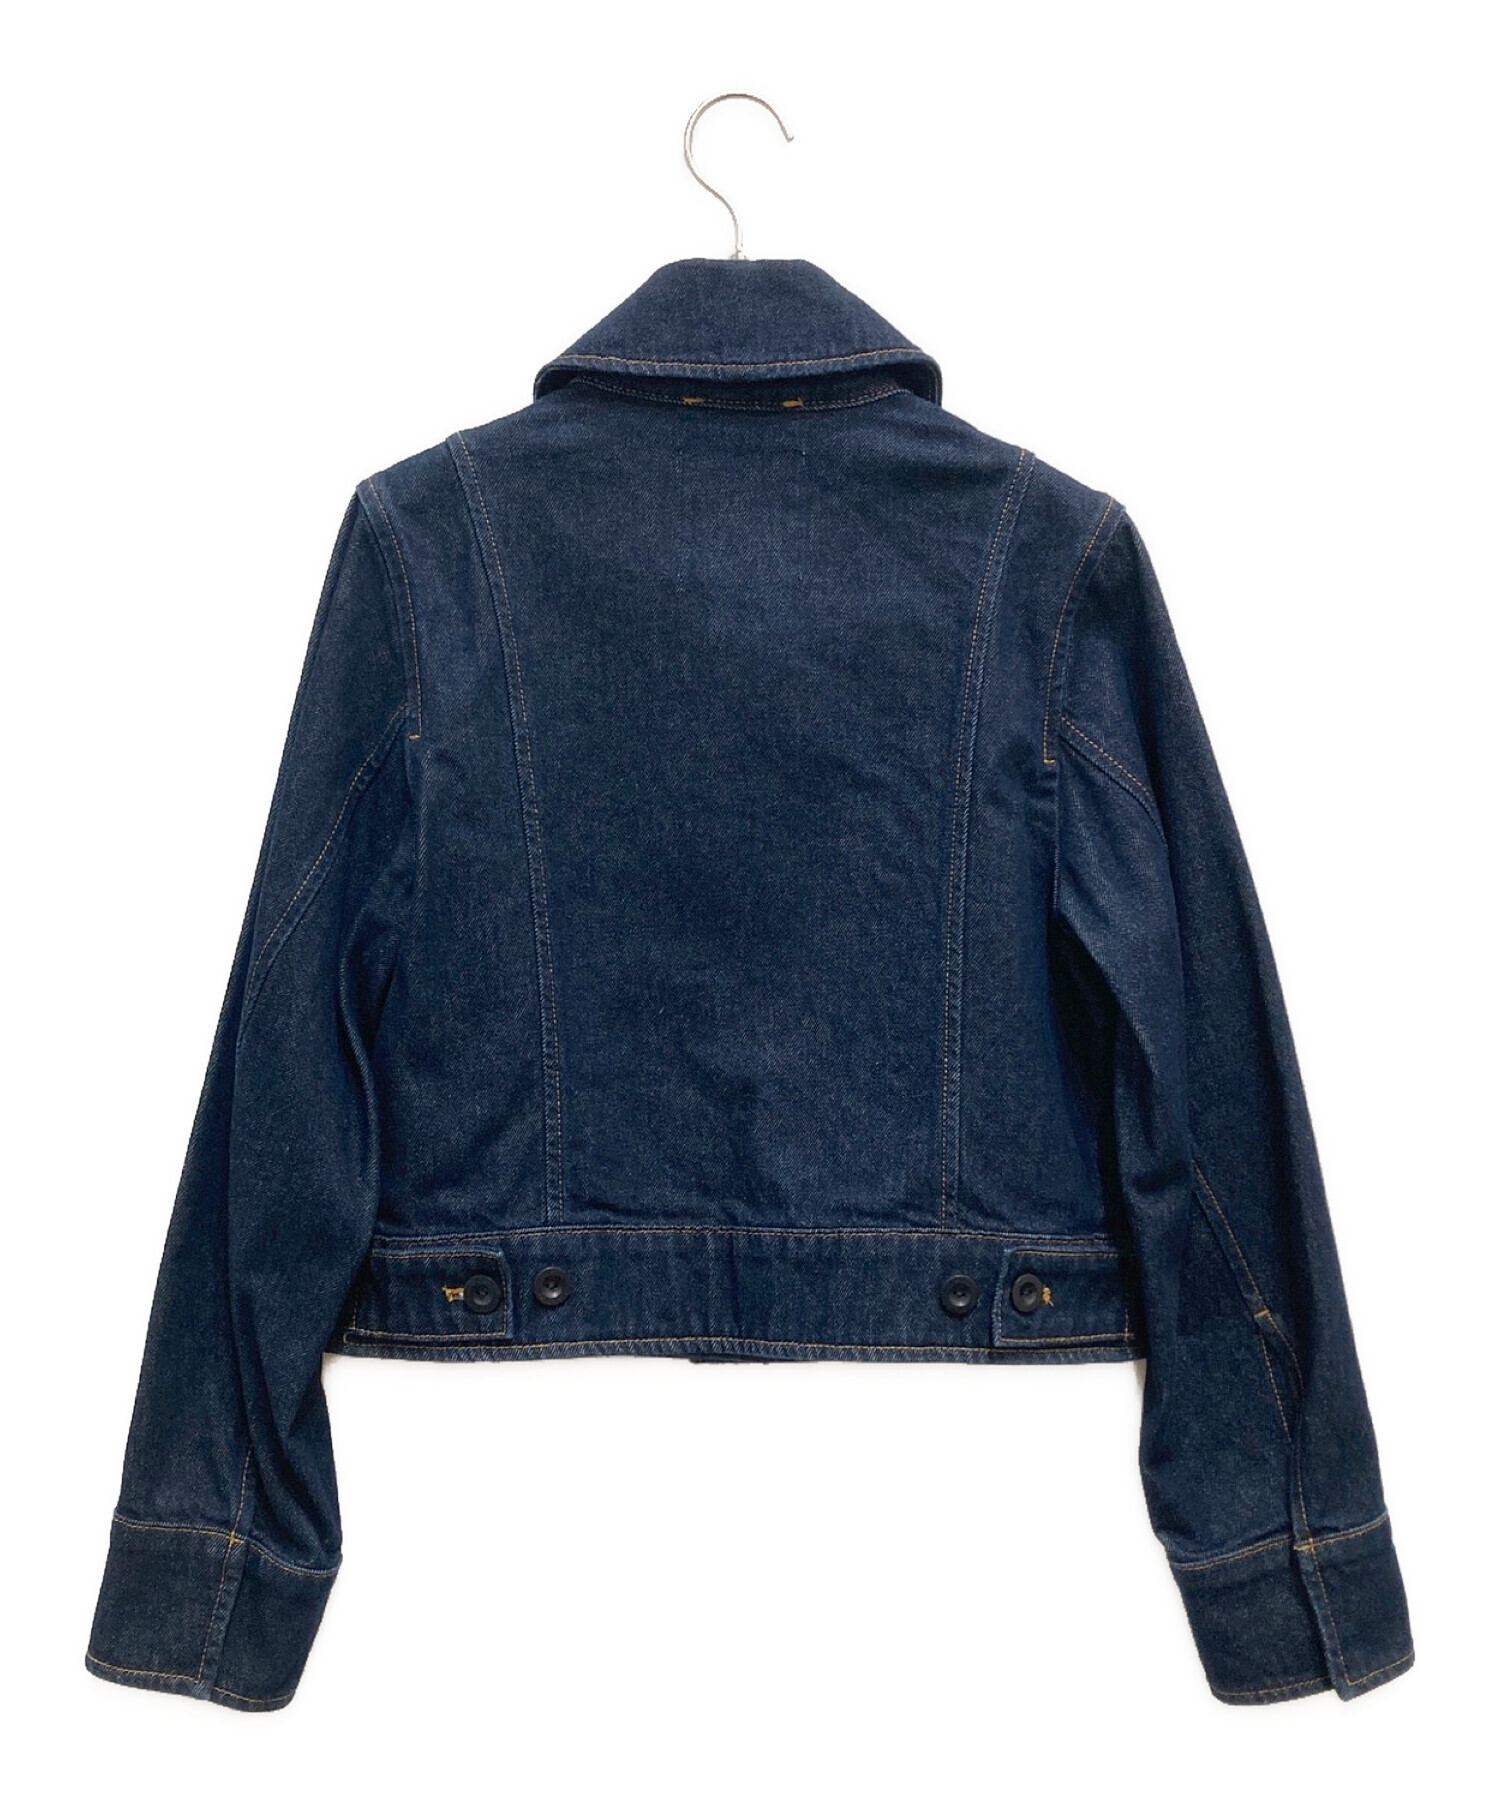 COS (コス) 濃紺デニムジャケット サイズ:34